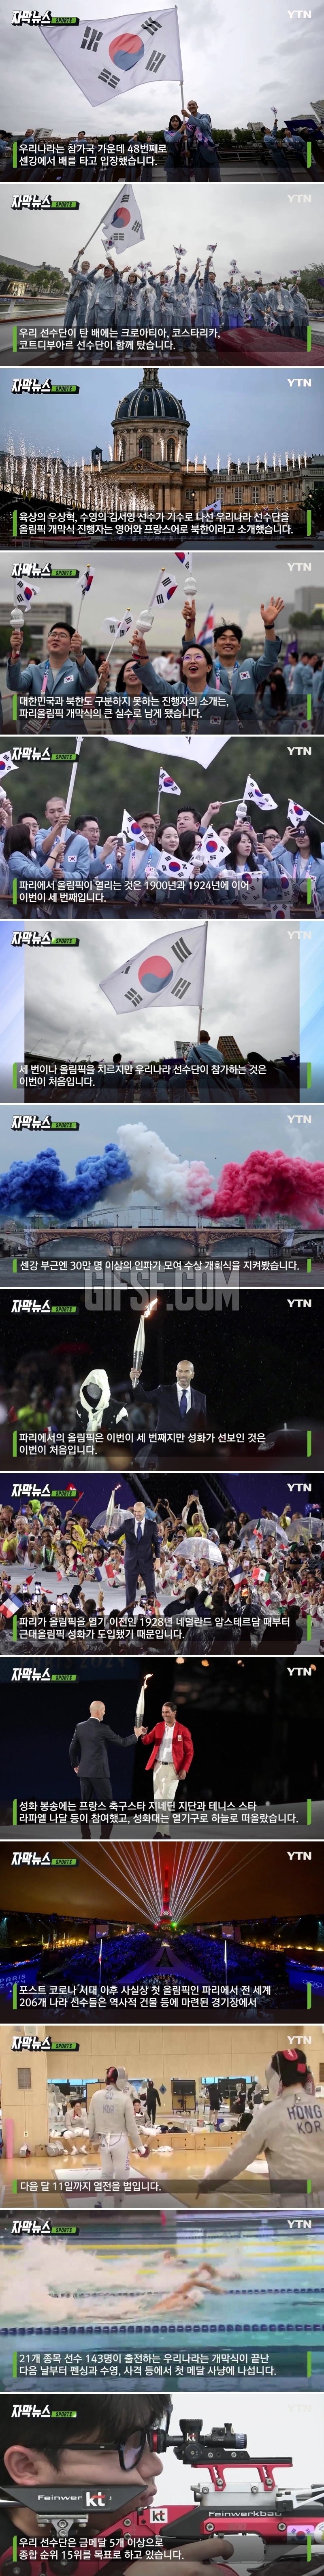 대한민국을 북한으로.파리올림픽 개막식부터 ',황당 실수',.jpg